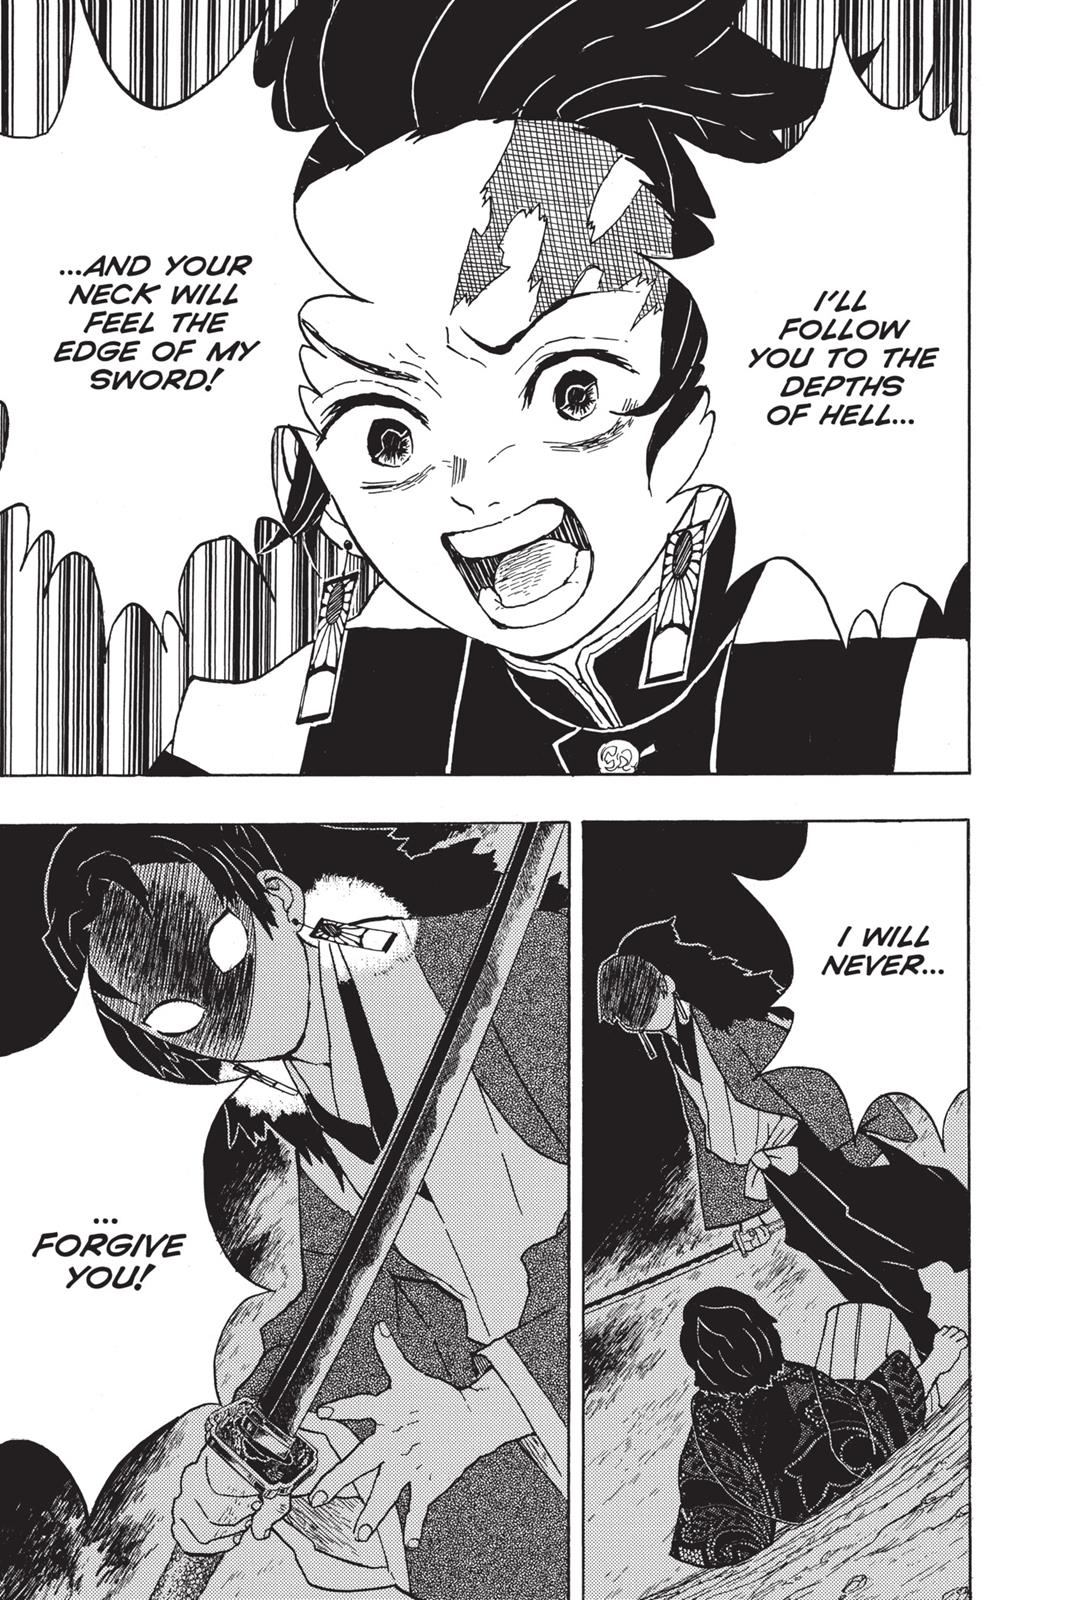 Demon Slayer Manga Manga Chapter - 14 - image 5